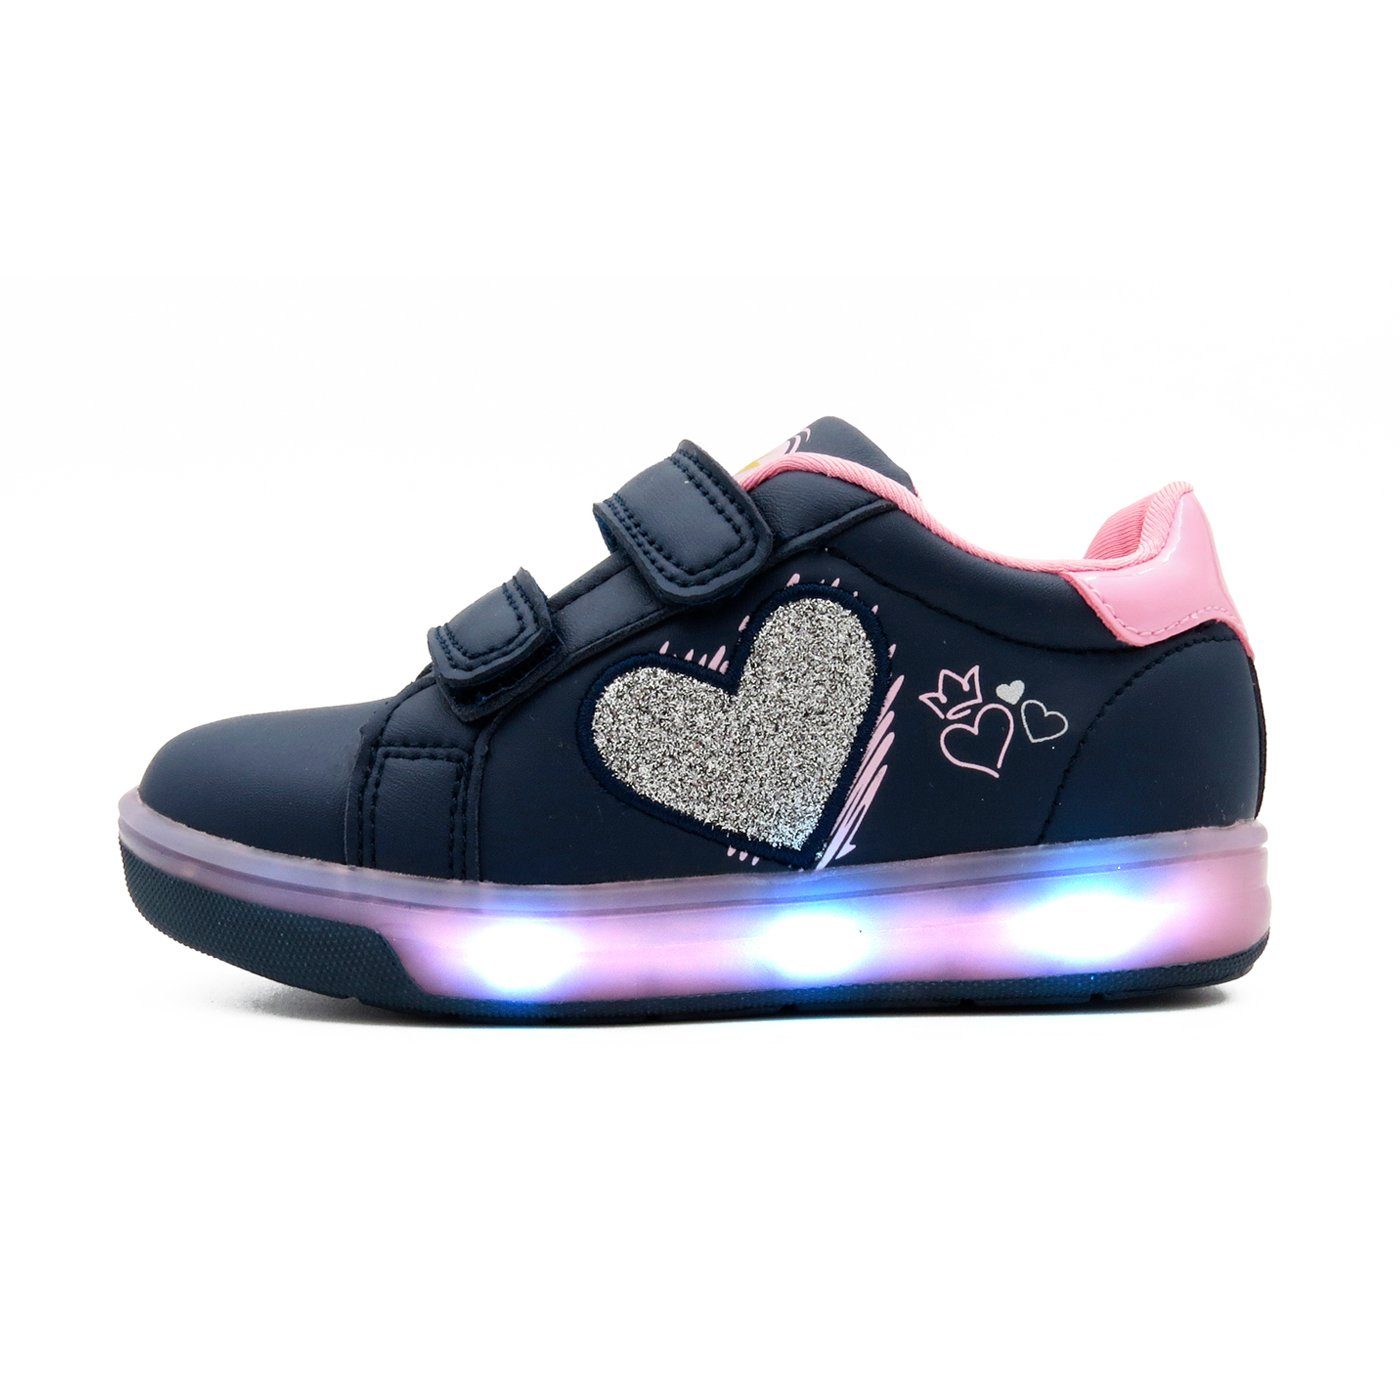 Sneaker Leuchtsohle BREEZY Material, Breezy Leuchtsohle, Schuhe Sneaker atmungsaktive 2196111 Atumgsaktiv LIGHT LED LED mit Klettverschluss